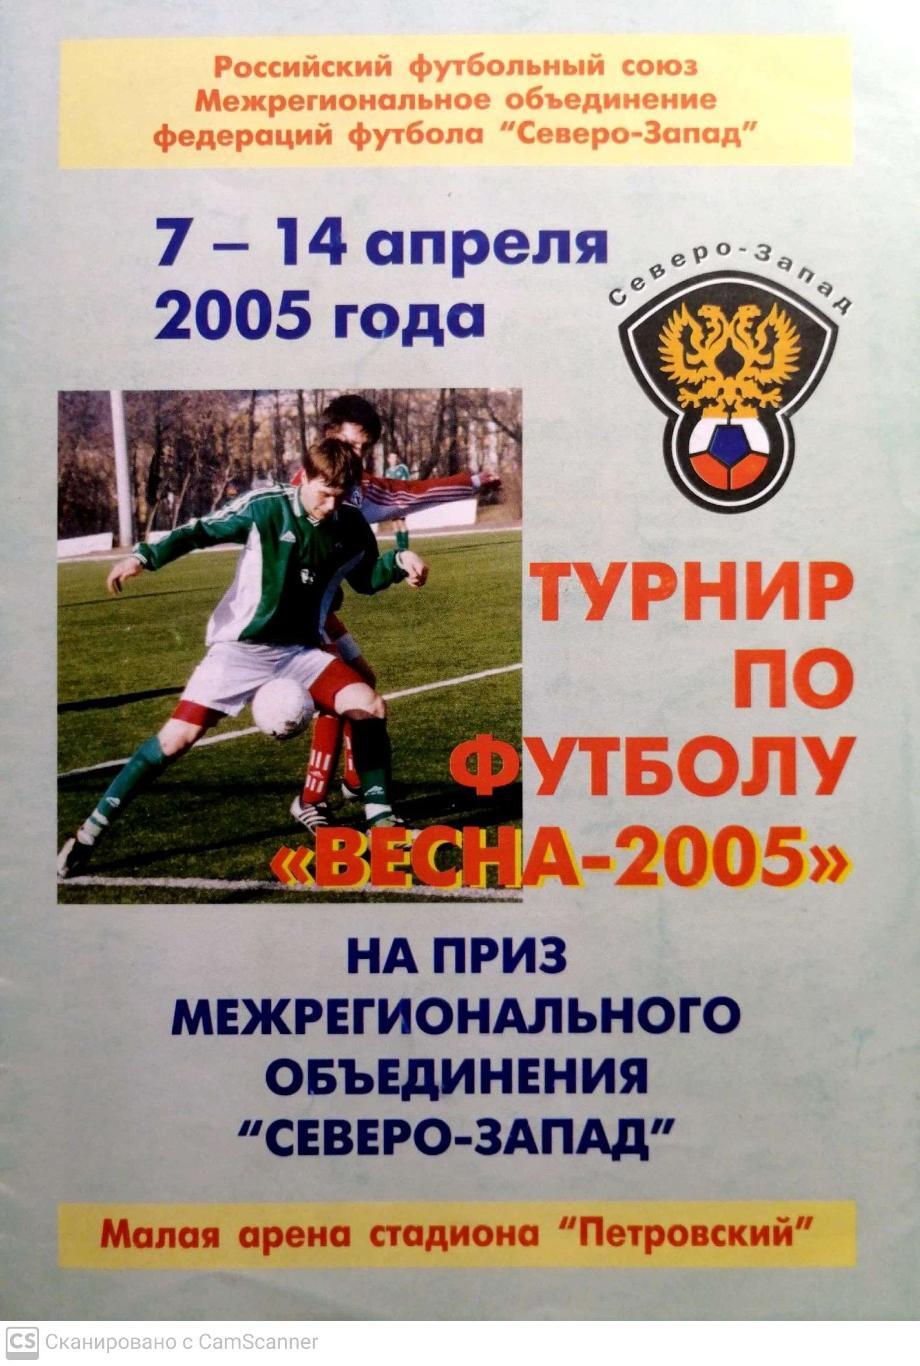 Турнир команд Северо-Запада Весна-2005 (7-14 апреля 2005). Зенит-2